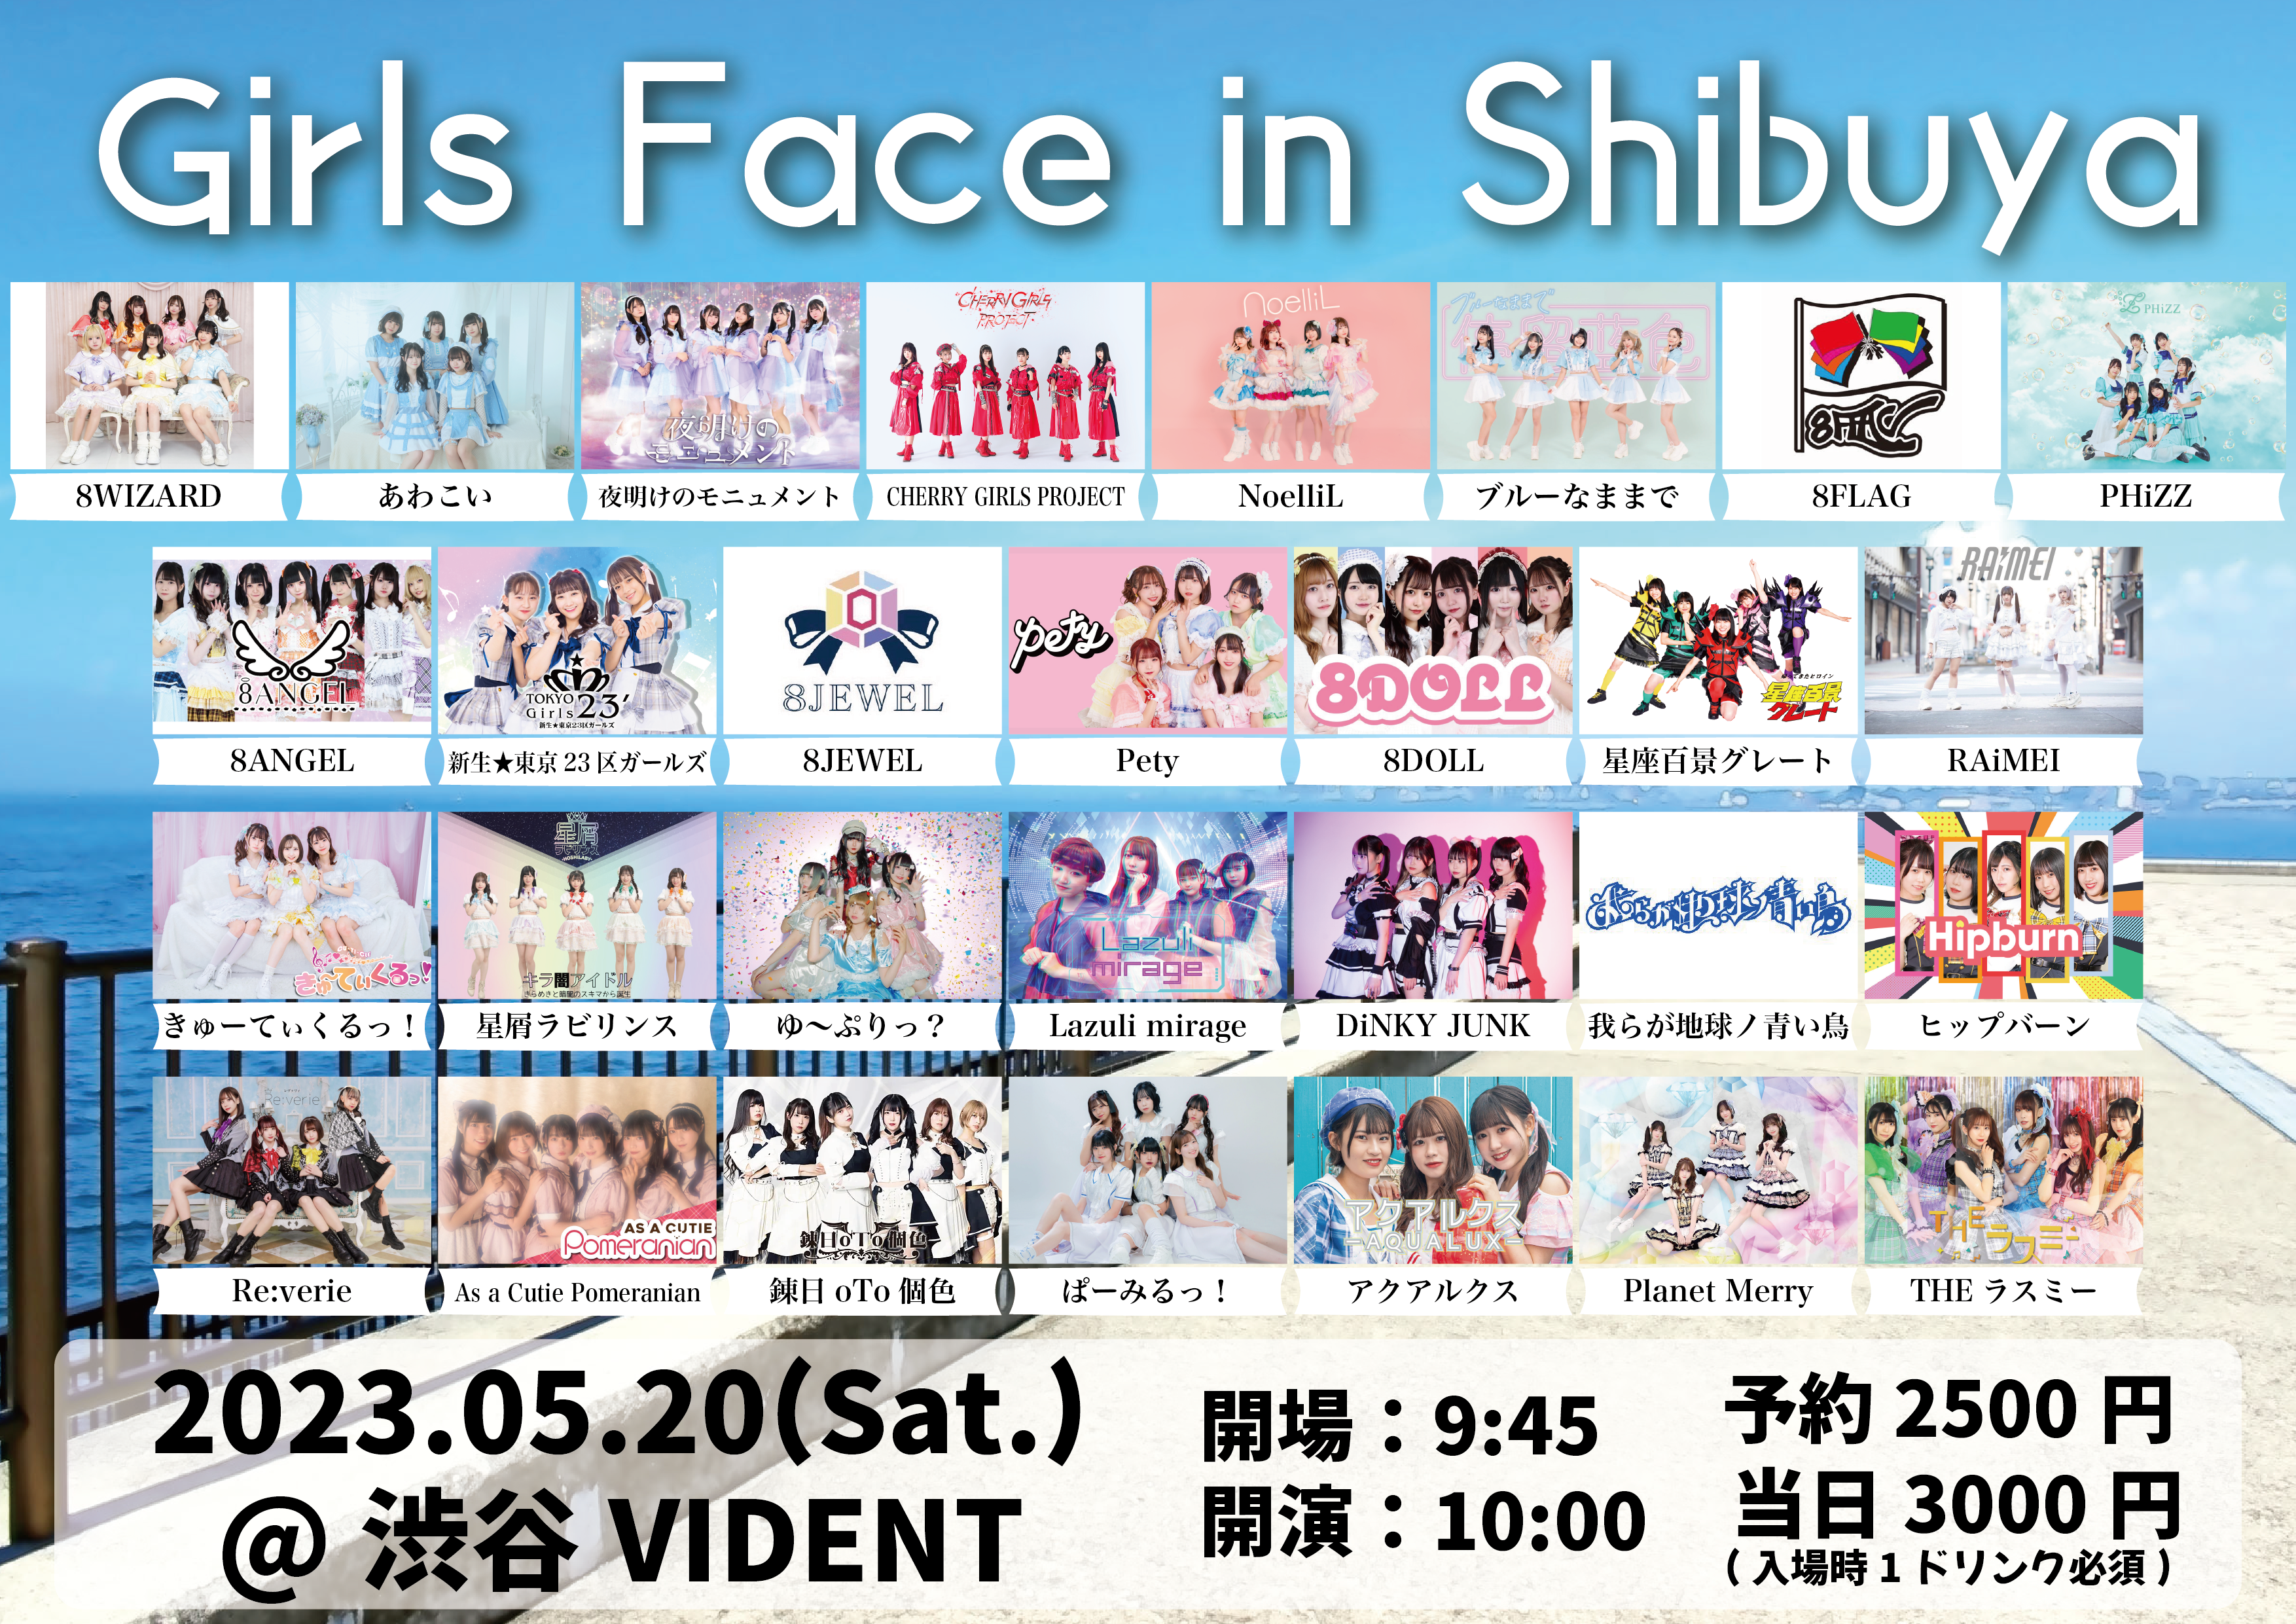 Girls Face in Shibuya